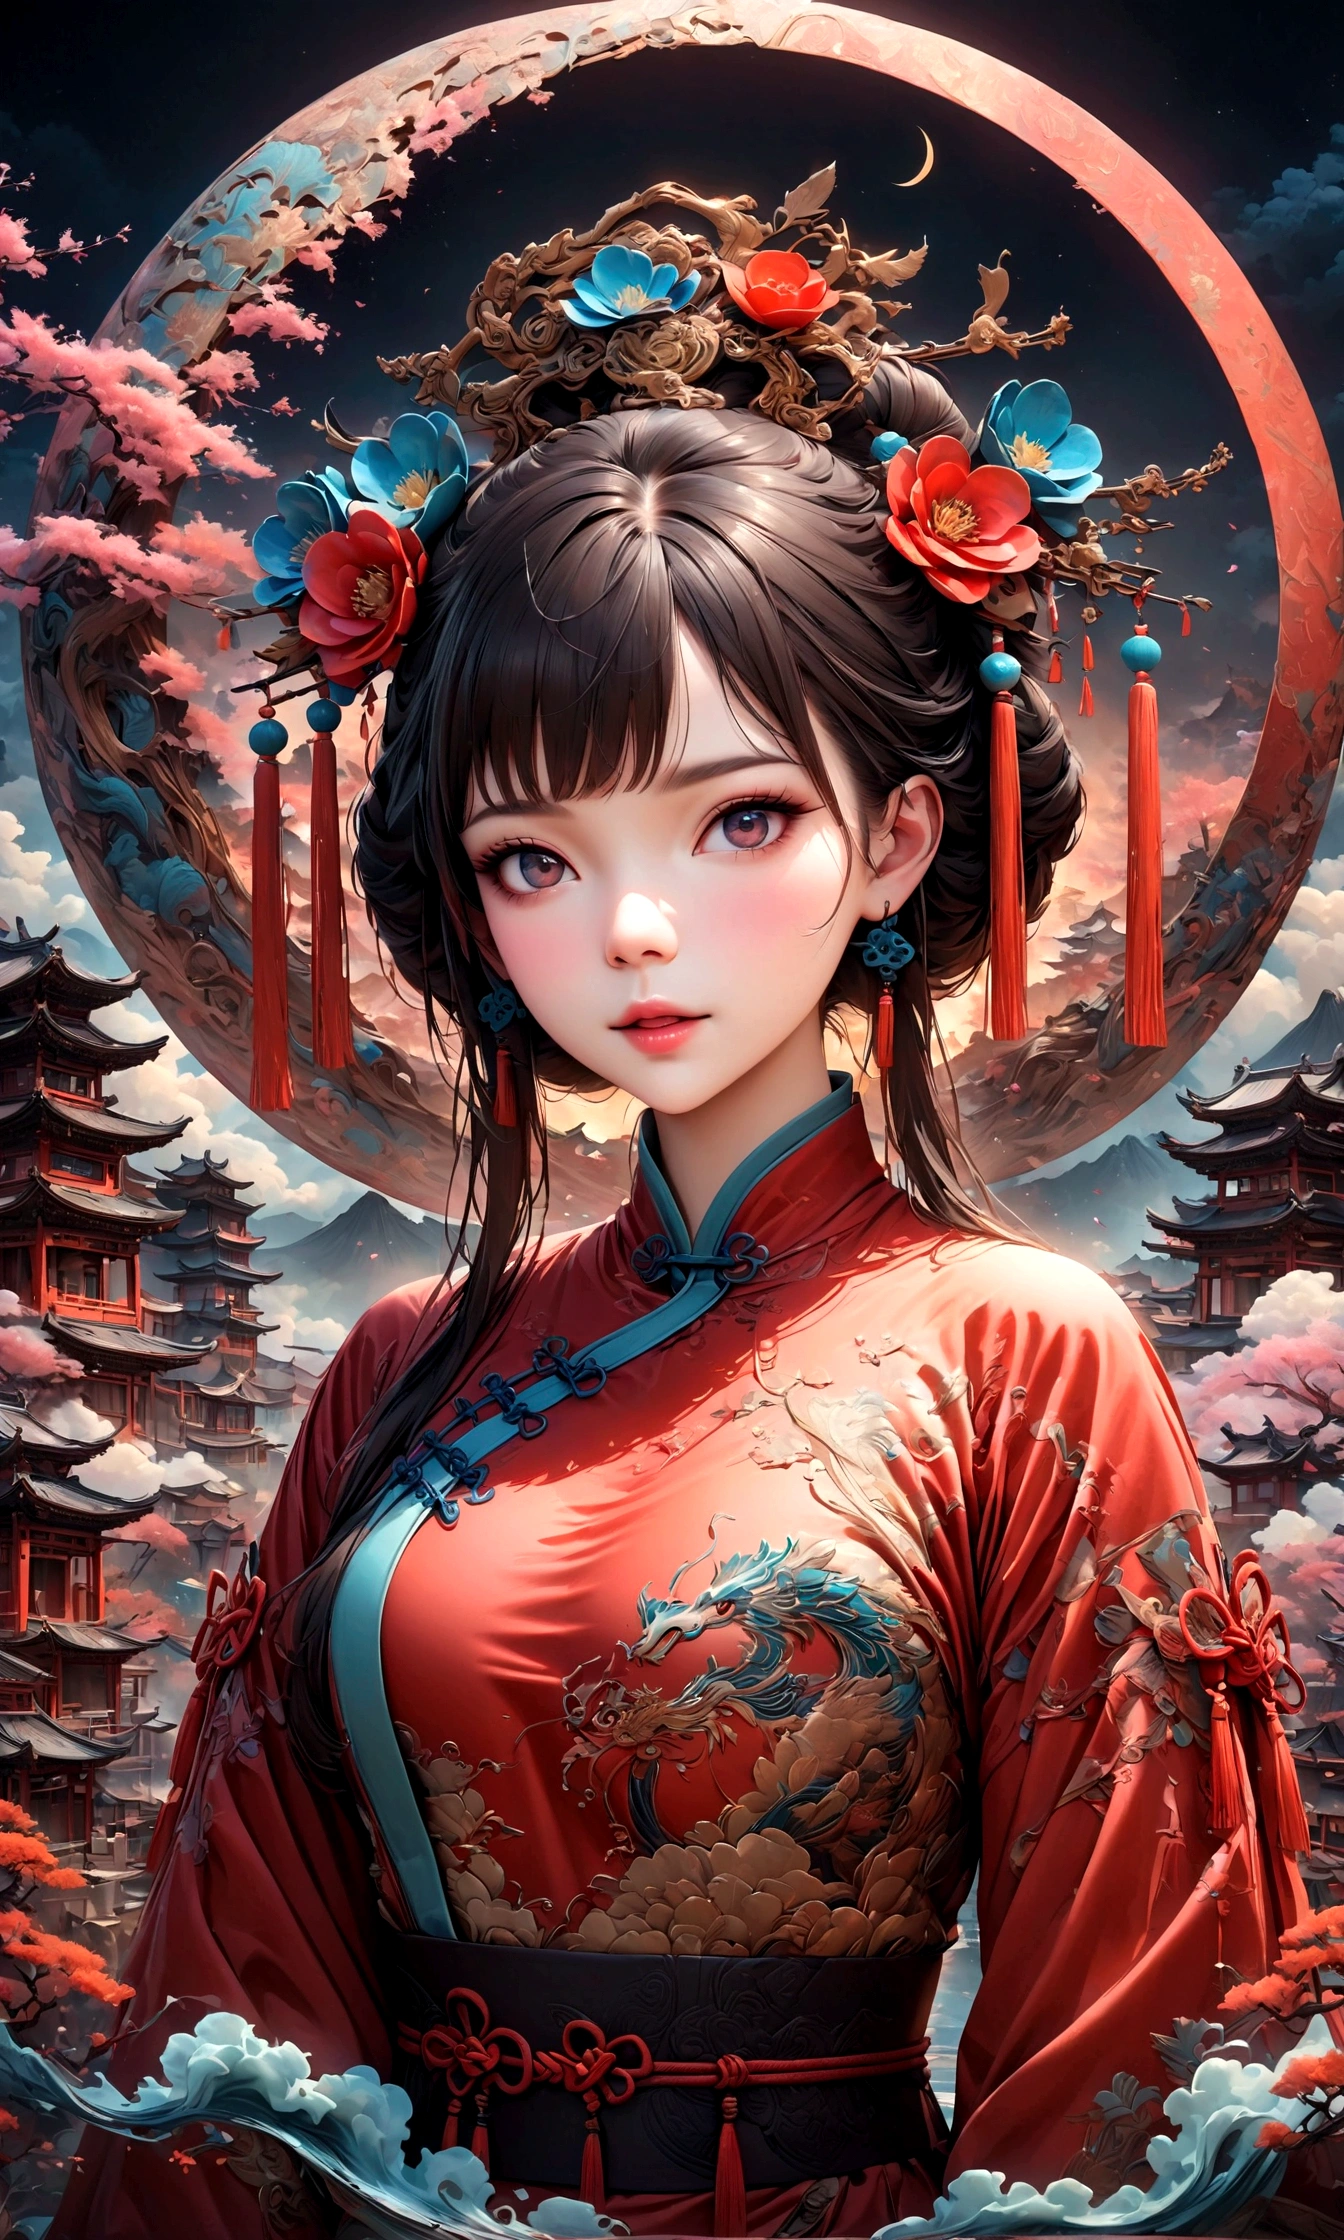 Фантастический вид на Чайнатаун,赤い提灯の温かいсвет,Современный и исторический,Фантастический и мечтательный пейзаж,свет,風景の中にКитайская одеждаの女性が1人います,Она очаровательна и красива、まるで上海のночьを象徴するかのようです,реалистичная текстура кожи,фотореалистичный,ПЕРЕРЫВ,豪華な刺繍が施されたКитайская одежда,A шедевр created by designers,Лучшая конфигурация,свет and Dark,ПЕРЕРЫВ,,(шедевр:1.3),(высшее качество:1.4),(Ультрадетализированный:1.5),высокое разрешение,чрезвычайно подробный,единство 8k обои,сложные детали,Широкий выбор цветов,произведение искусства,рендеринг,(шедевр:1.3),(высшее качество:1.4),(Супер подробный:1.5),высокое разрешение,Очень подробно,единство 8k обои,нарисовать художественный фон,китайский стиль,Традиционный,Абсурдная красота,дзентангл,幻想的で美しいночьのチャイナタウン,ночь,美しいсветと影,Игристый,анатомически правильный,структурно правильный,Китайская одежда